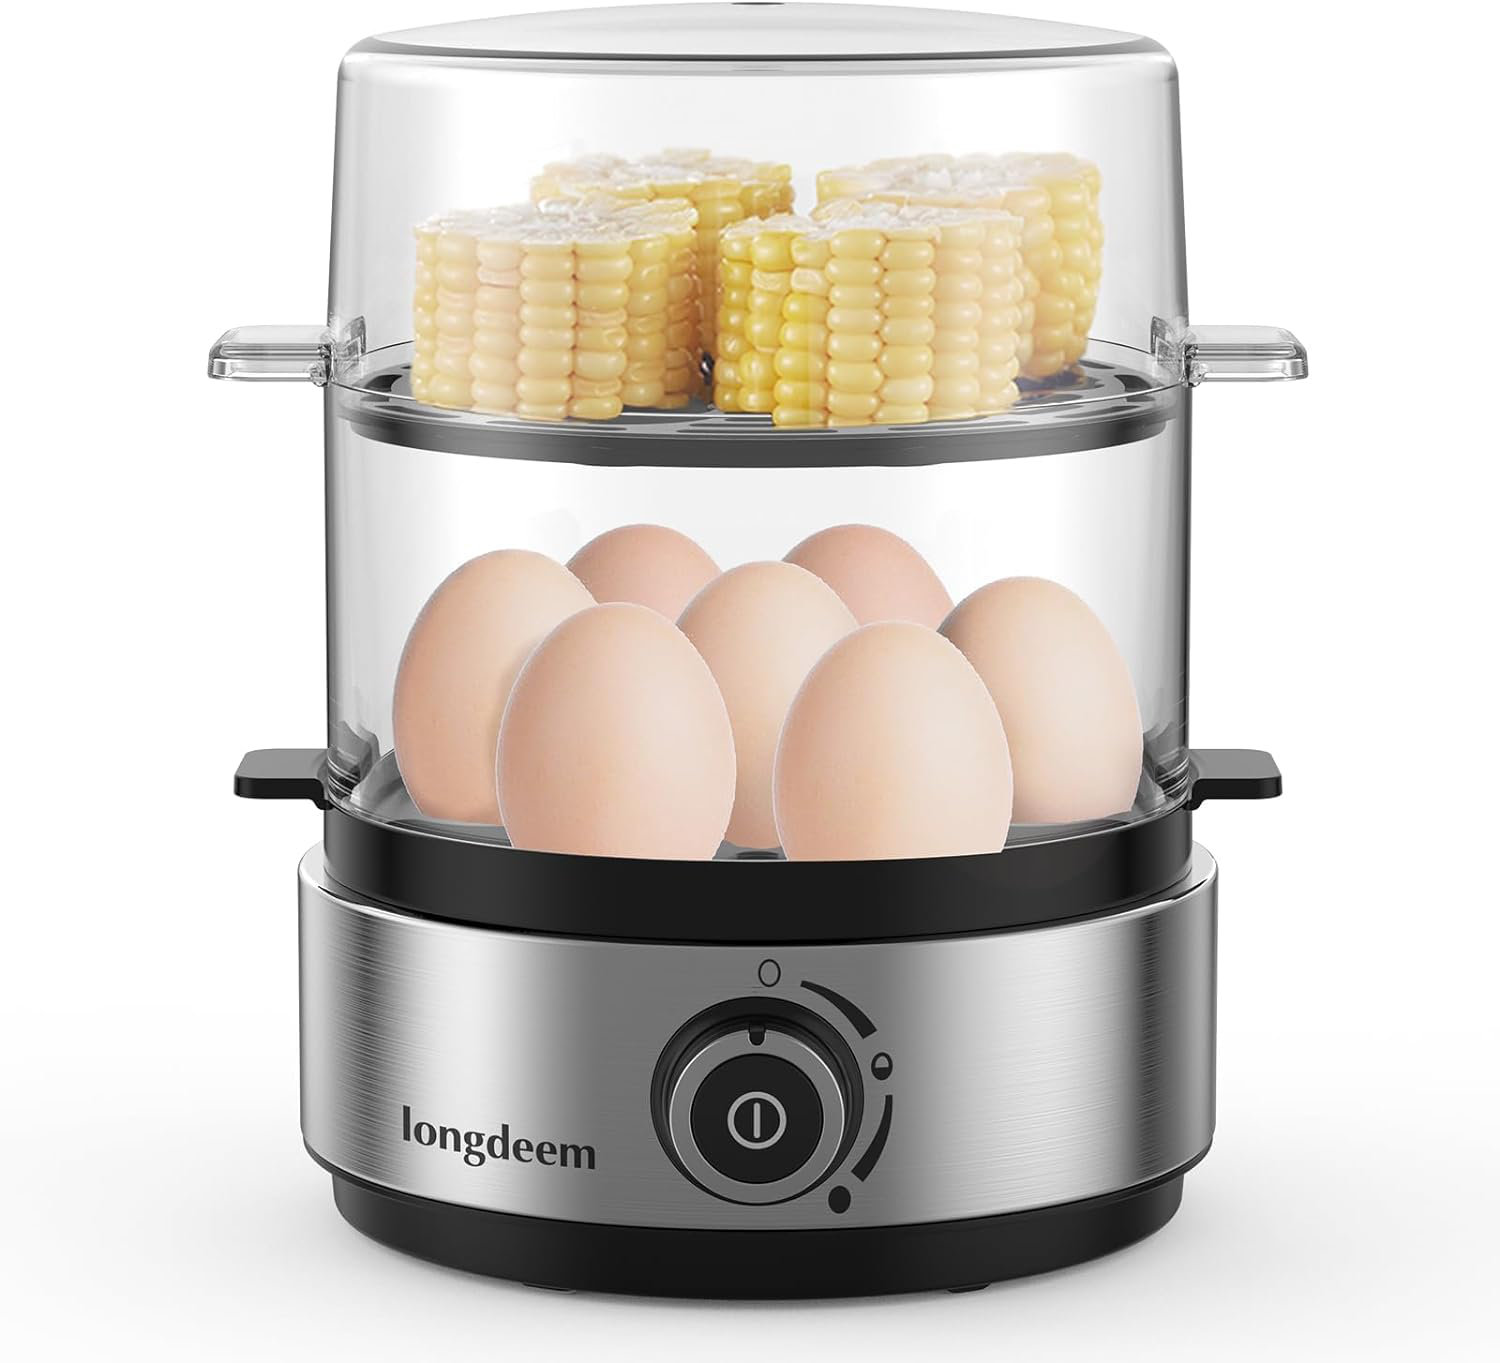 https://assets.wfcdn.com/im/22848567/compr-r85/2567/256756163/longdeem-egg-cooker-set-of-7.jpg